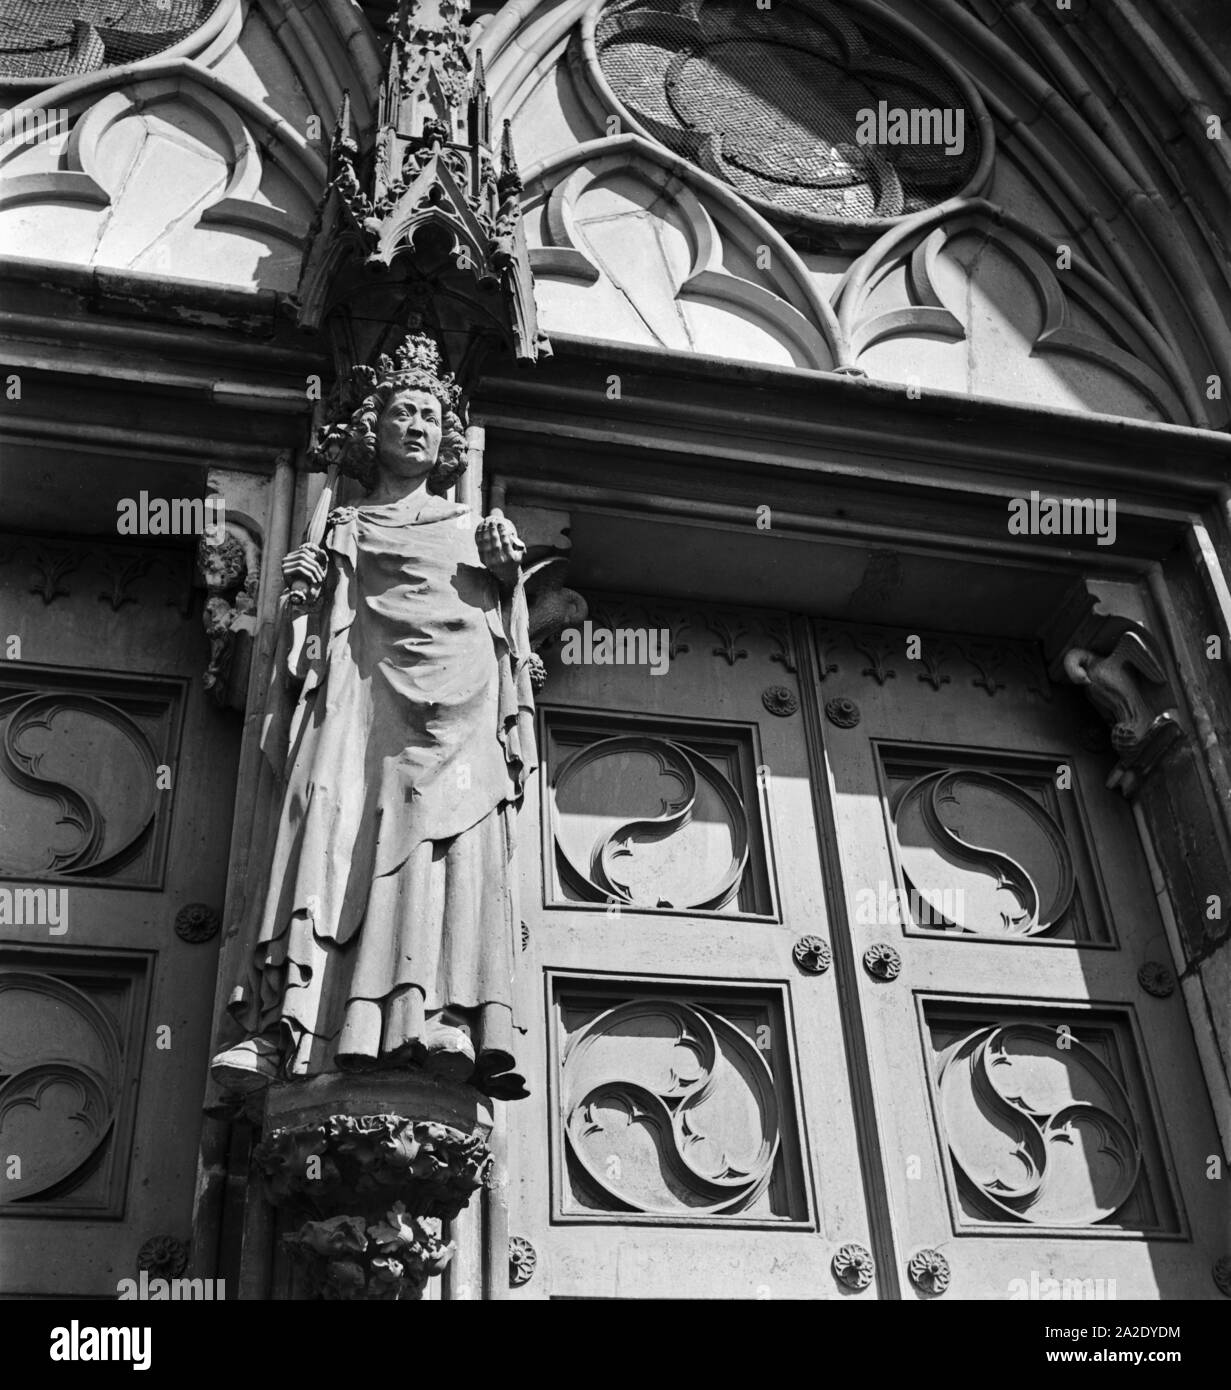 Portal am Dom zu Magdeburg, Deutschland 1930er Jahre. Ingresso alla Cattedrale di Magdeburgo, Germania 1930s. Foto Stock